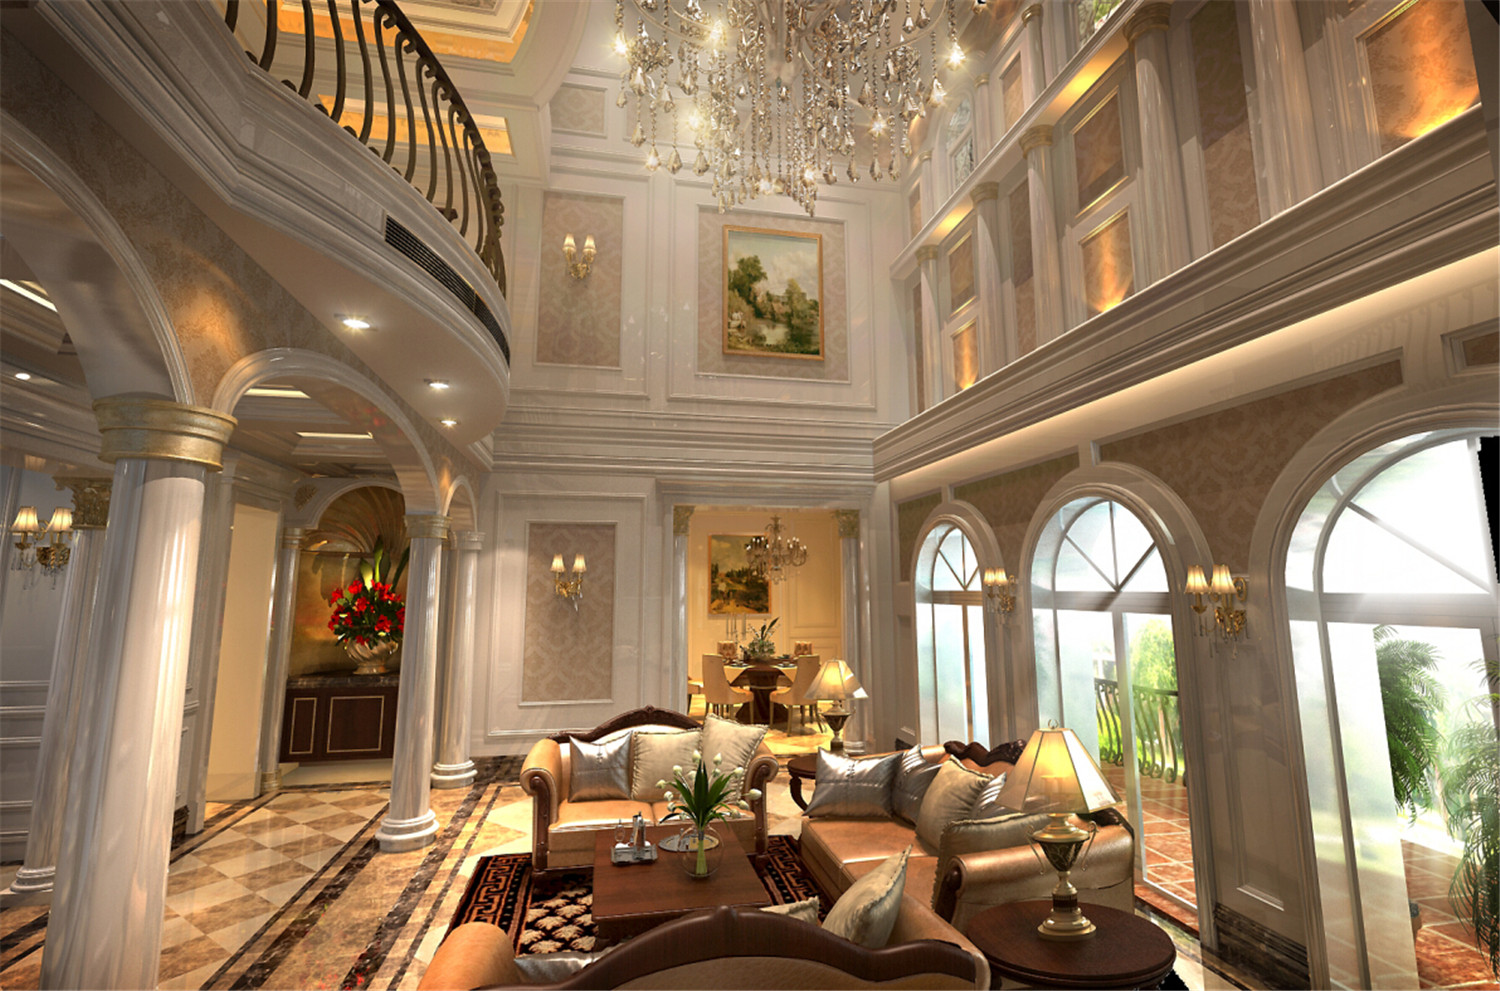 圣安德鲁斯 别墅装修 别墅设计 欧美风格 腾龙设计 客厅图片来自腾龙设计在圣安德鲁斯别墅装修欧美风格的分享